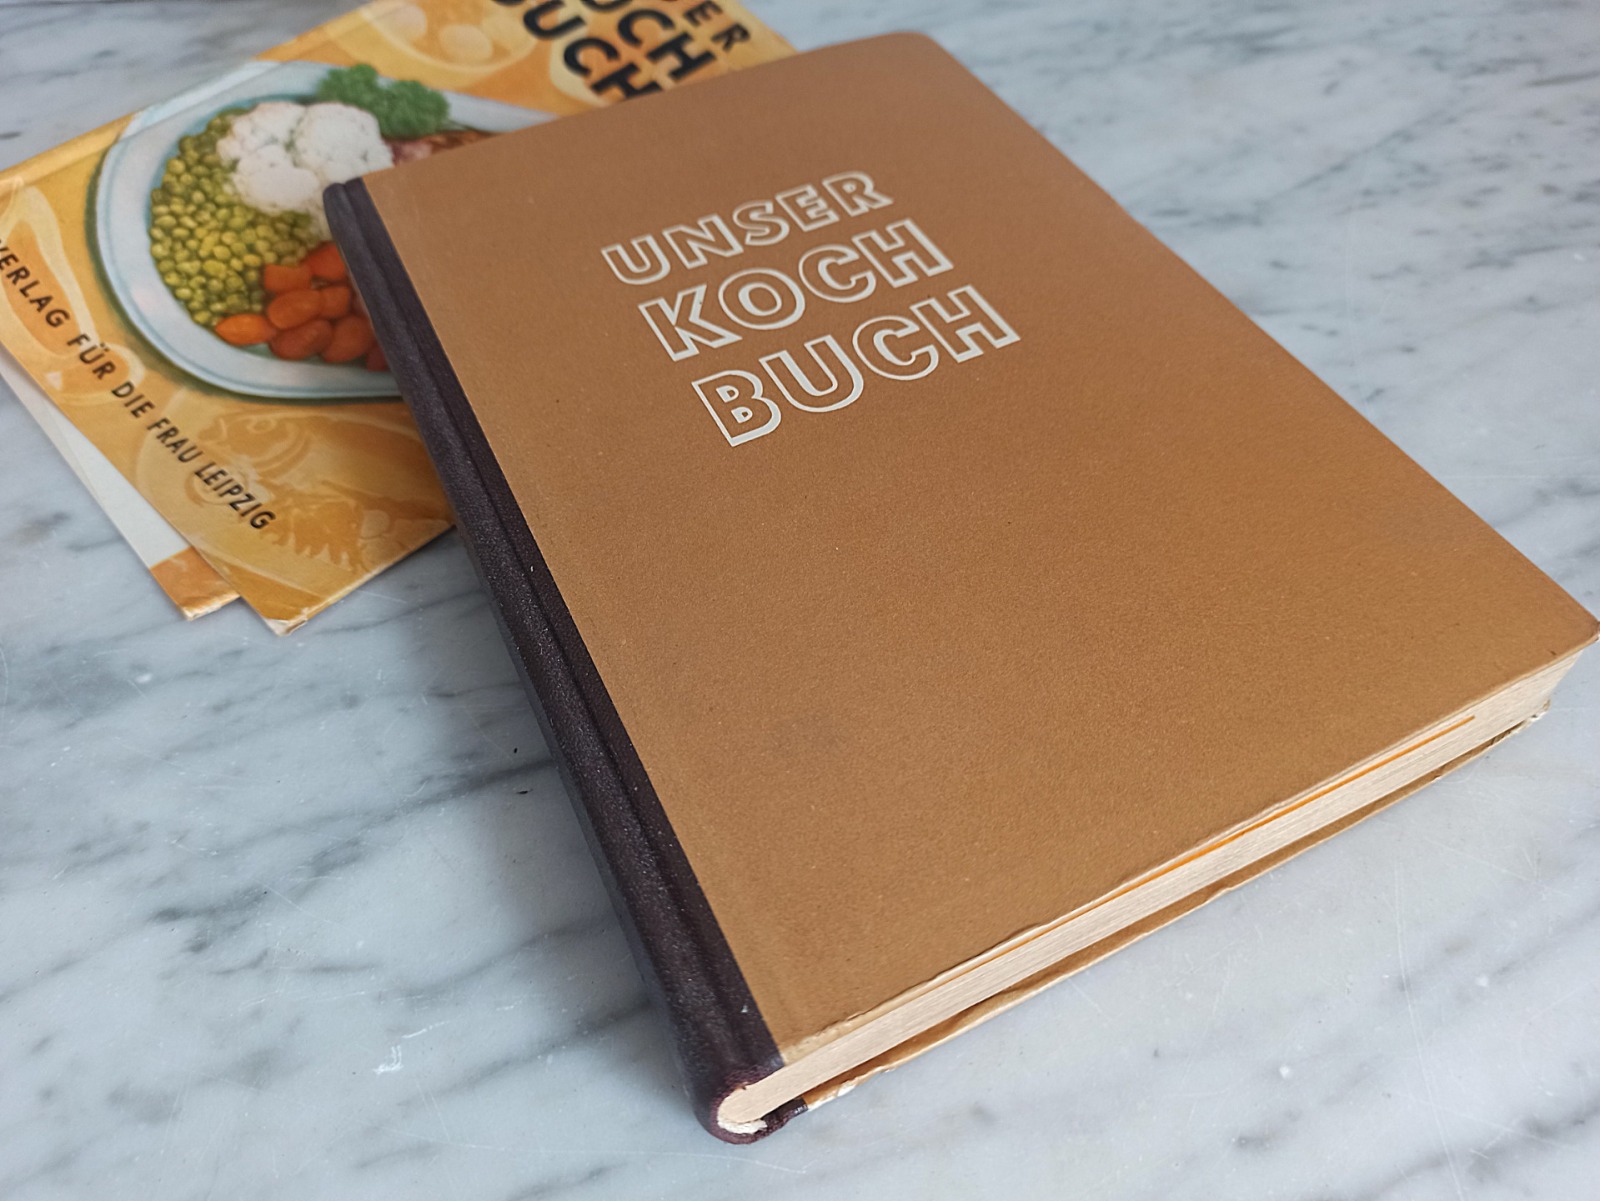 Unser Kochbuch / Verlag für die Frau 3